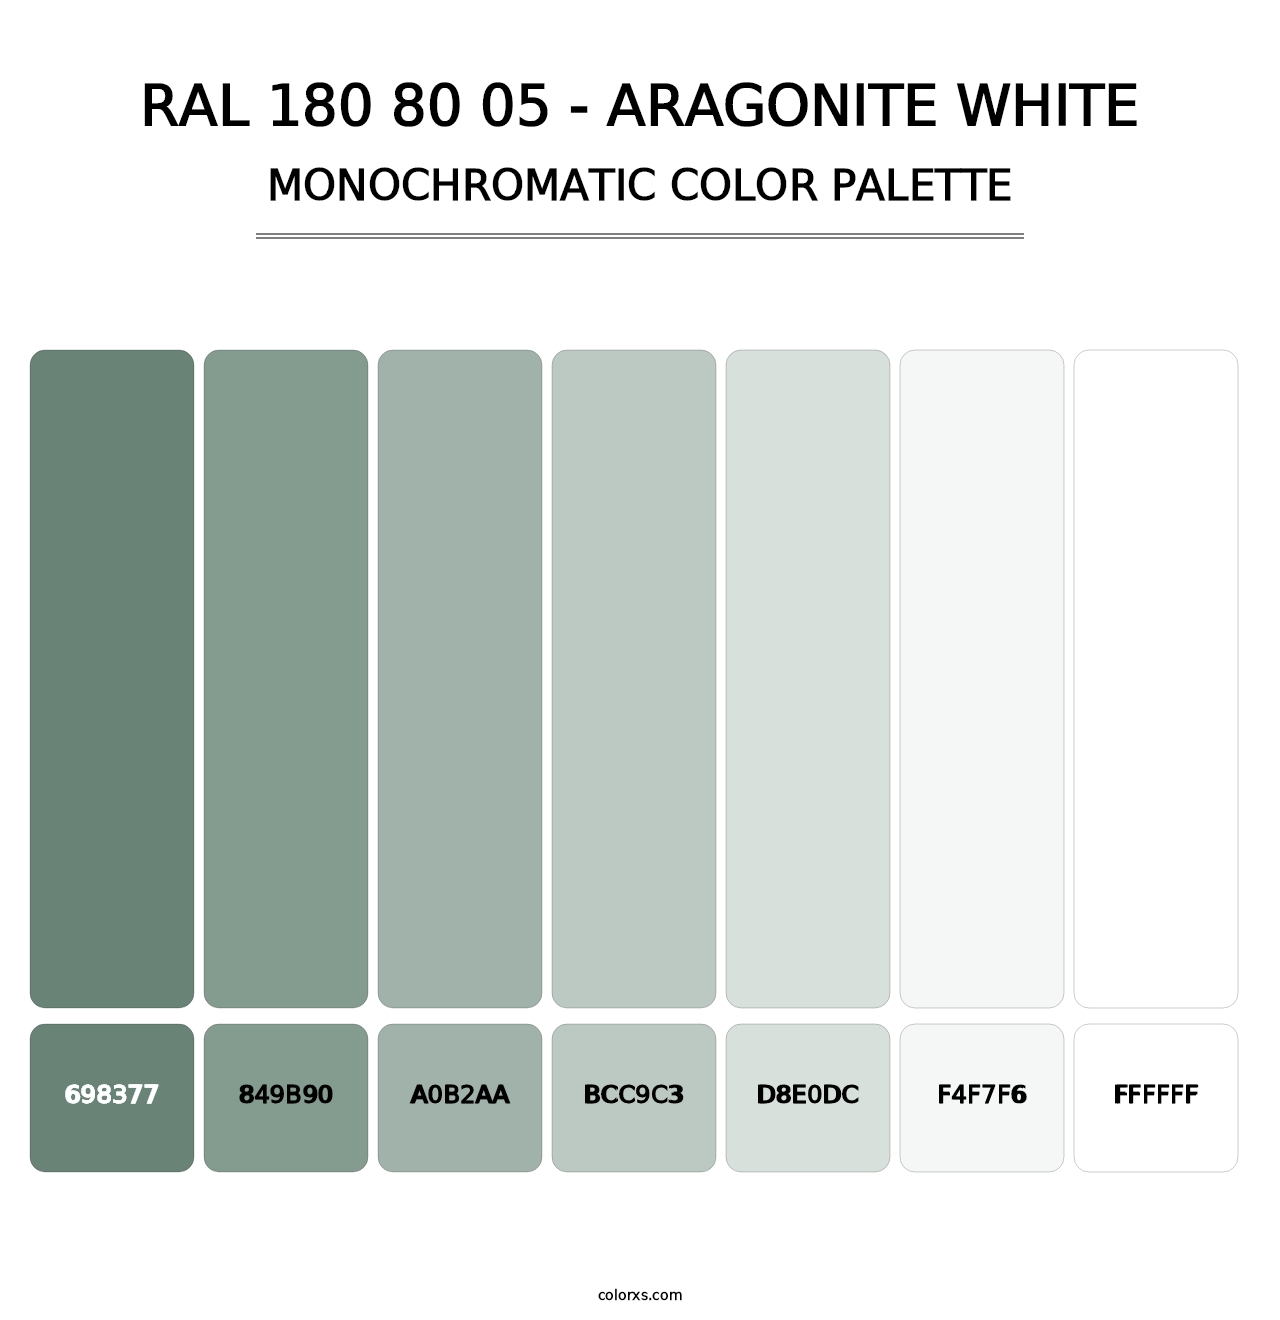 RAL 180 80 05 - Aragonite White - Monochromatic Color Palette